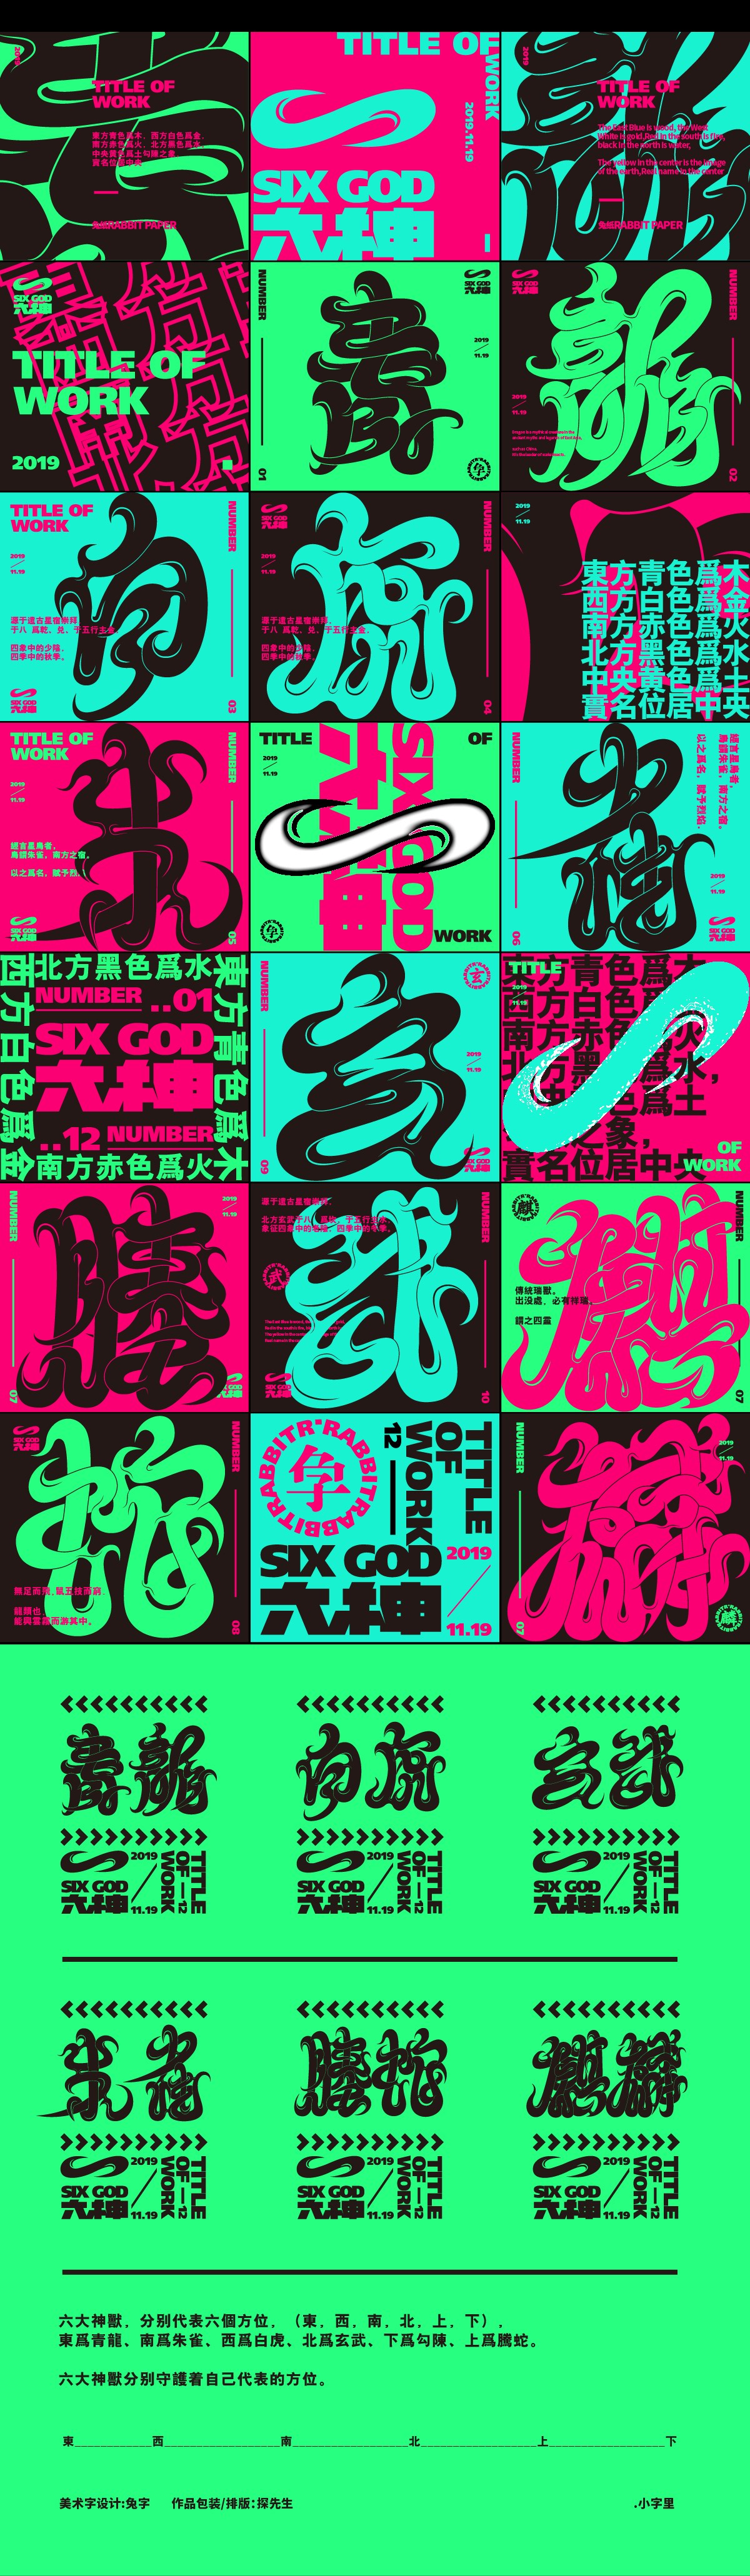 Six God 六神字体海报编排